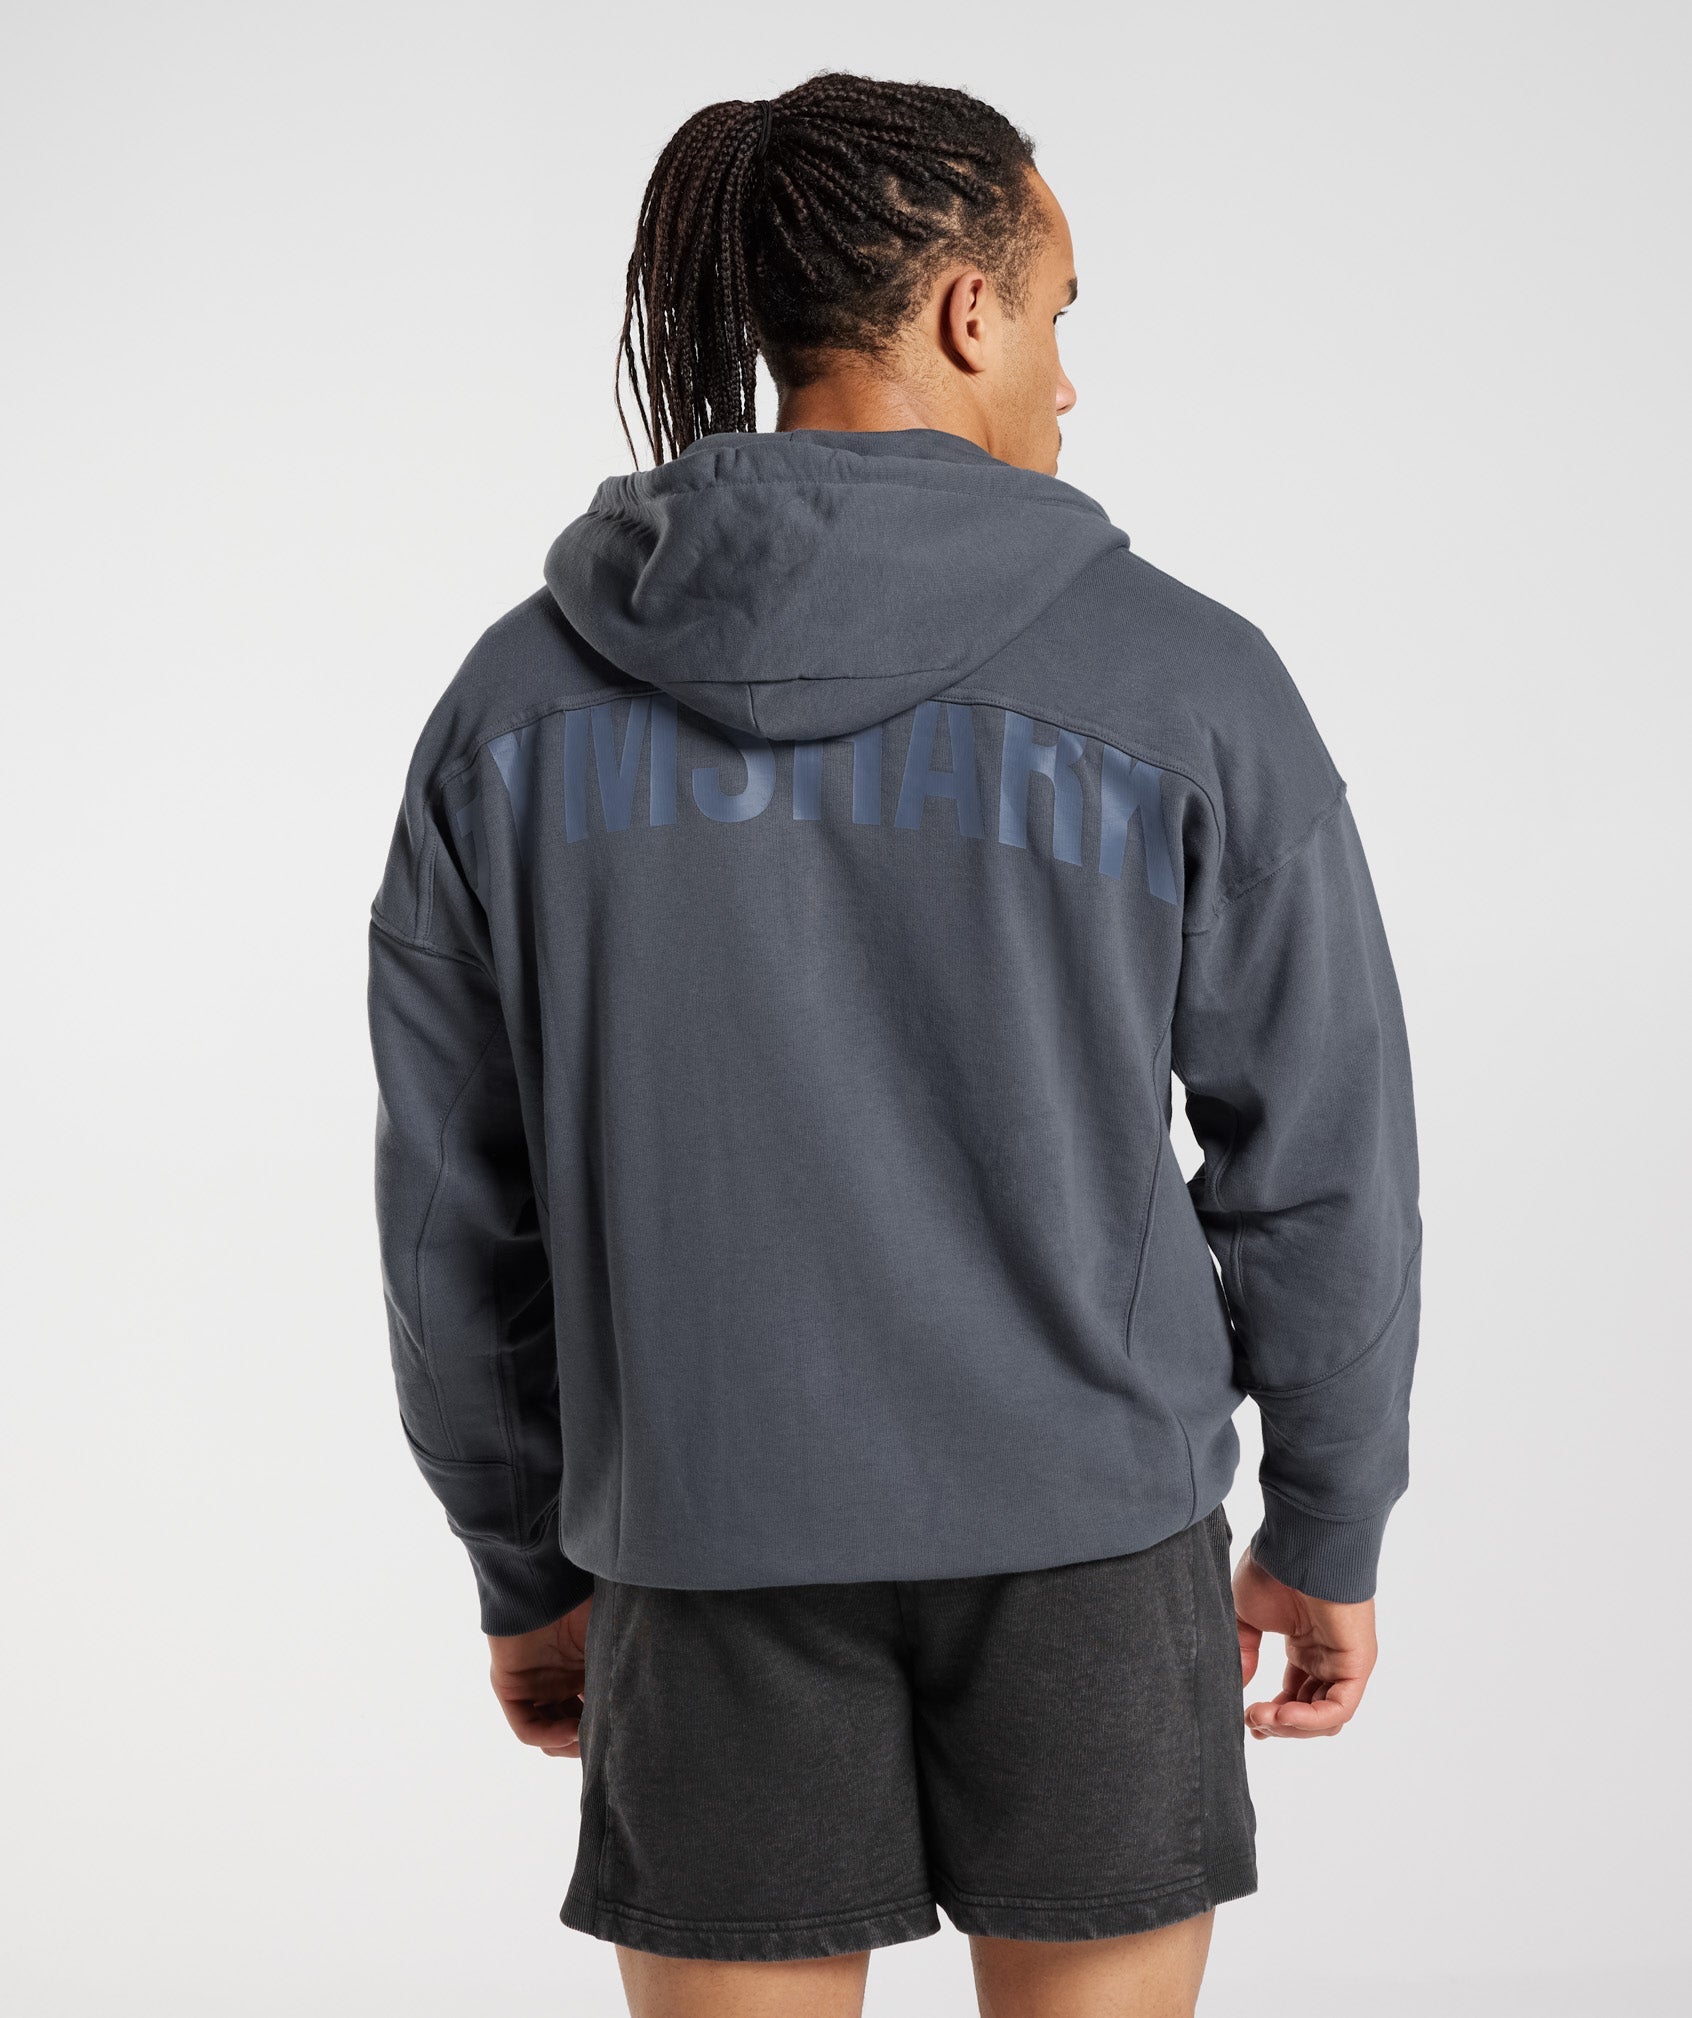 Gymshark zip hoodie • Tise